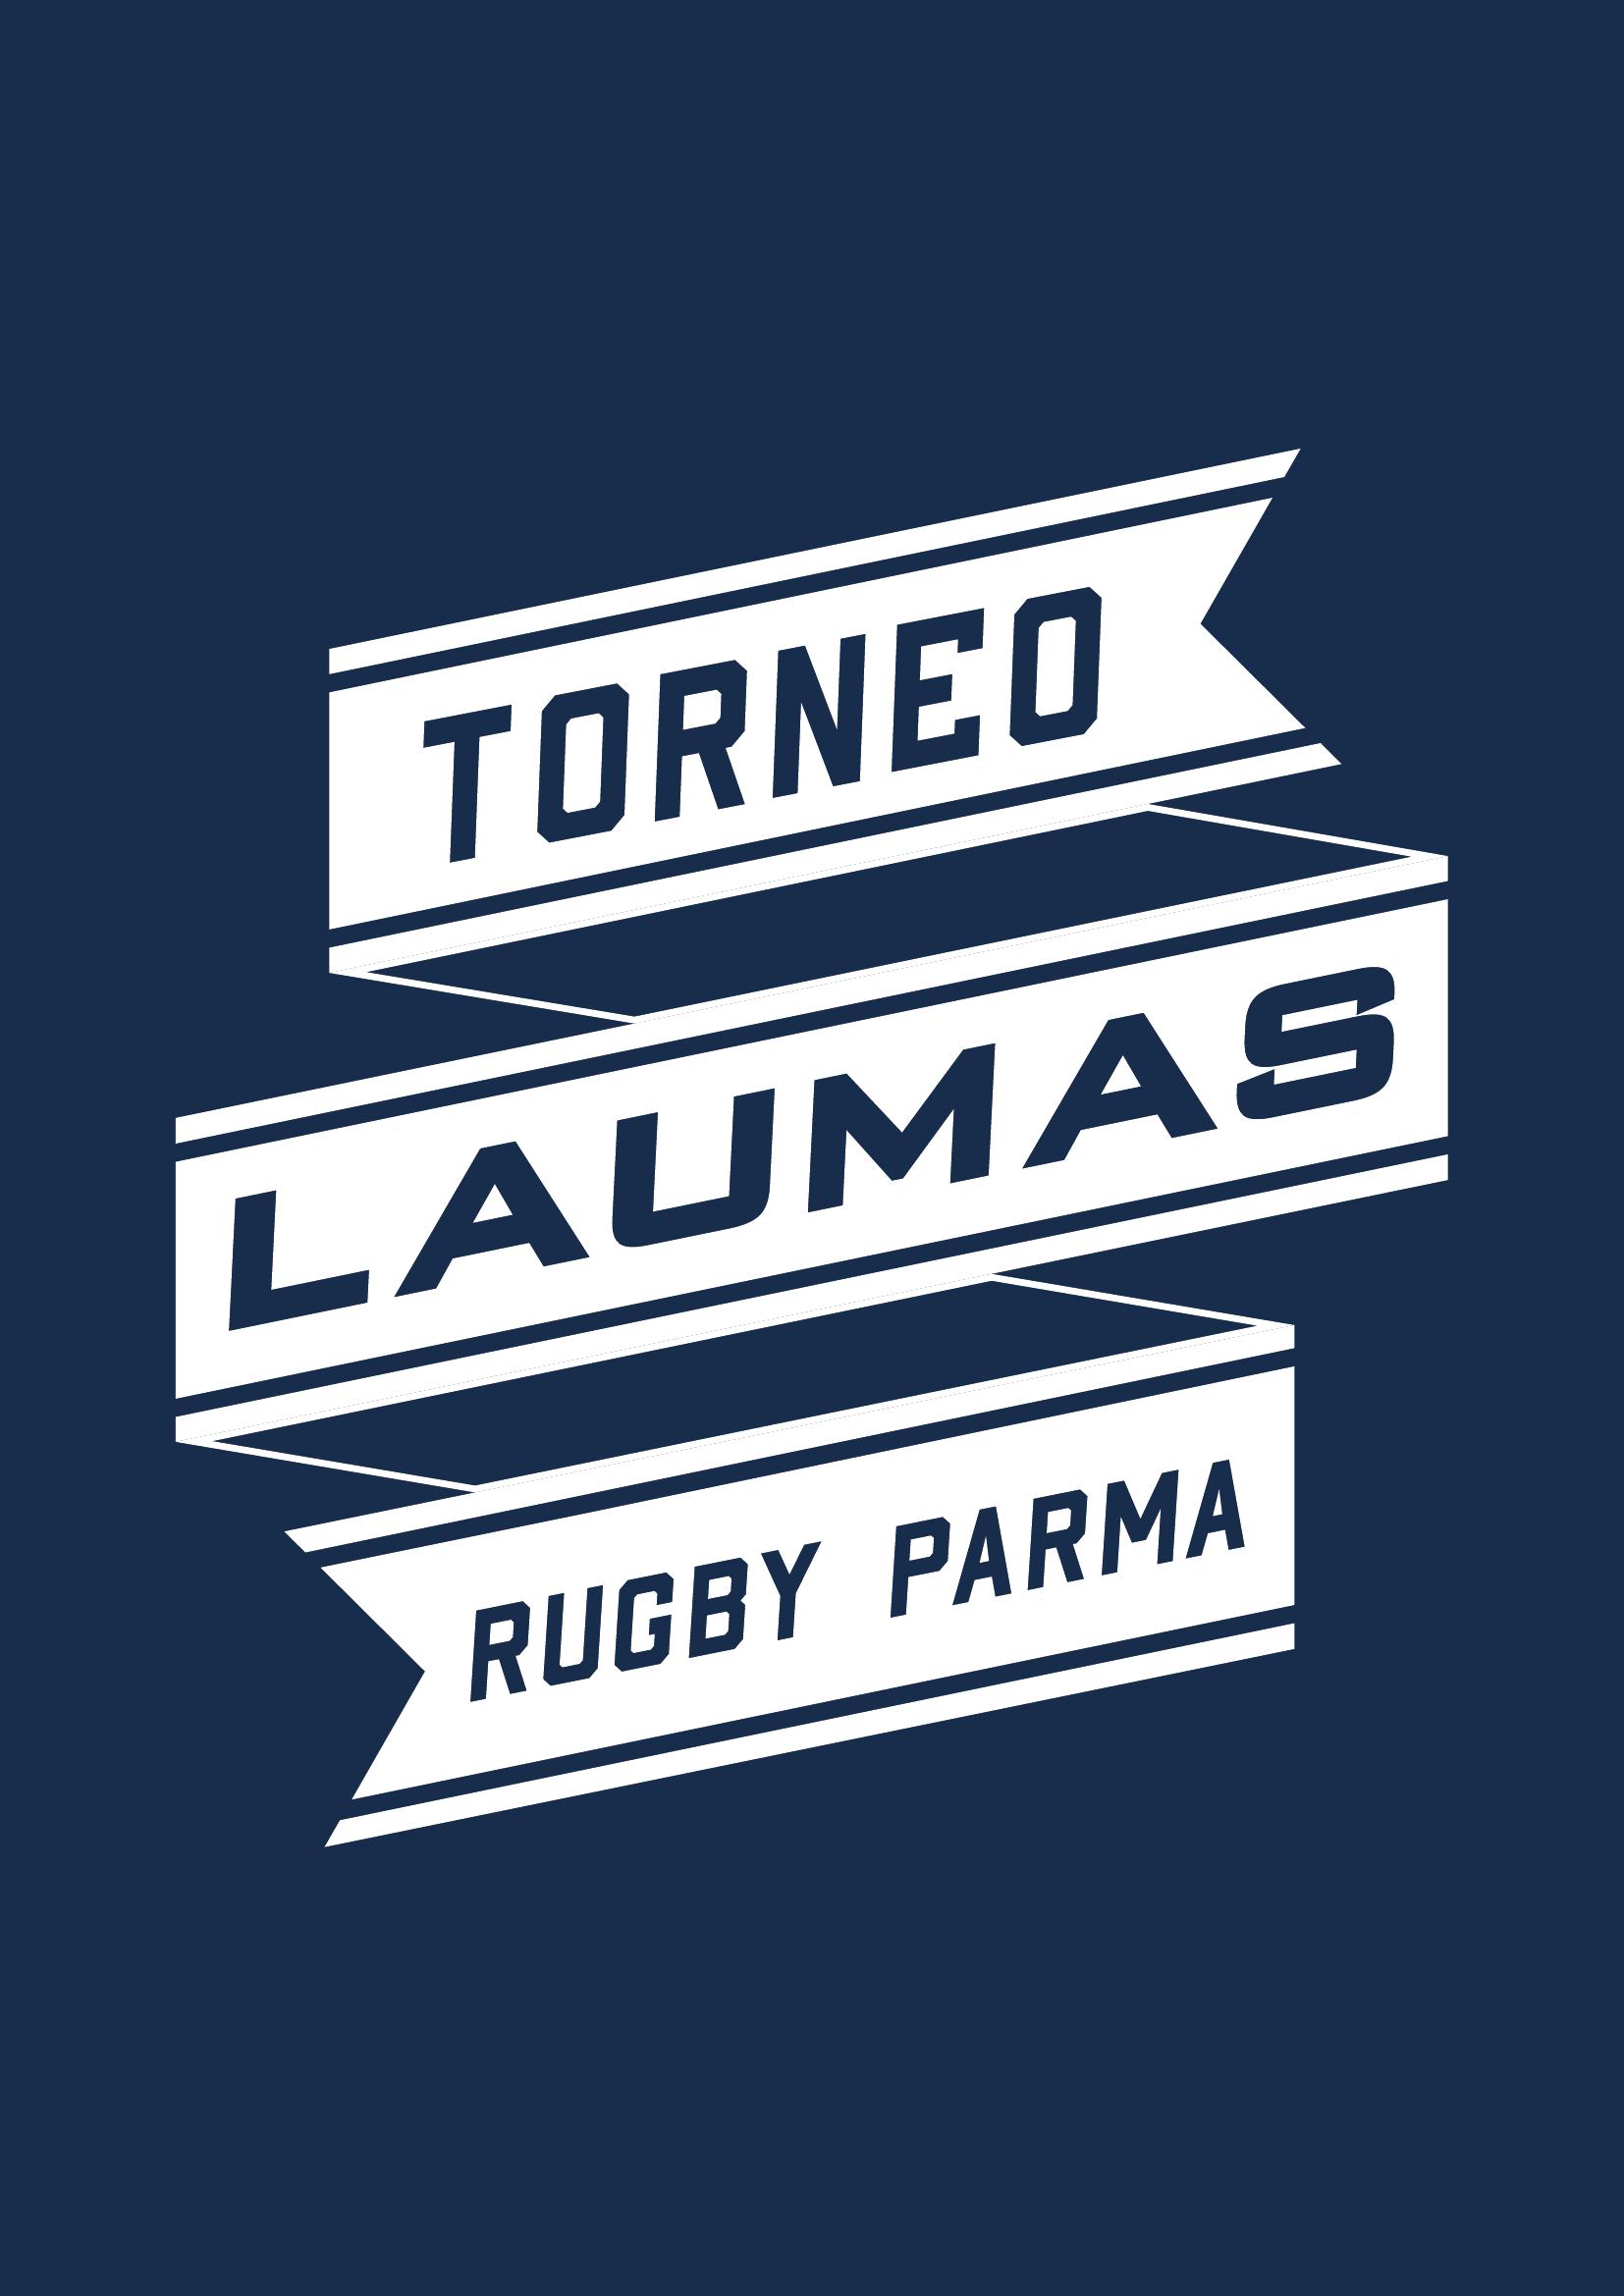 Logo TORNEO LAUMAS 